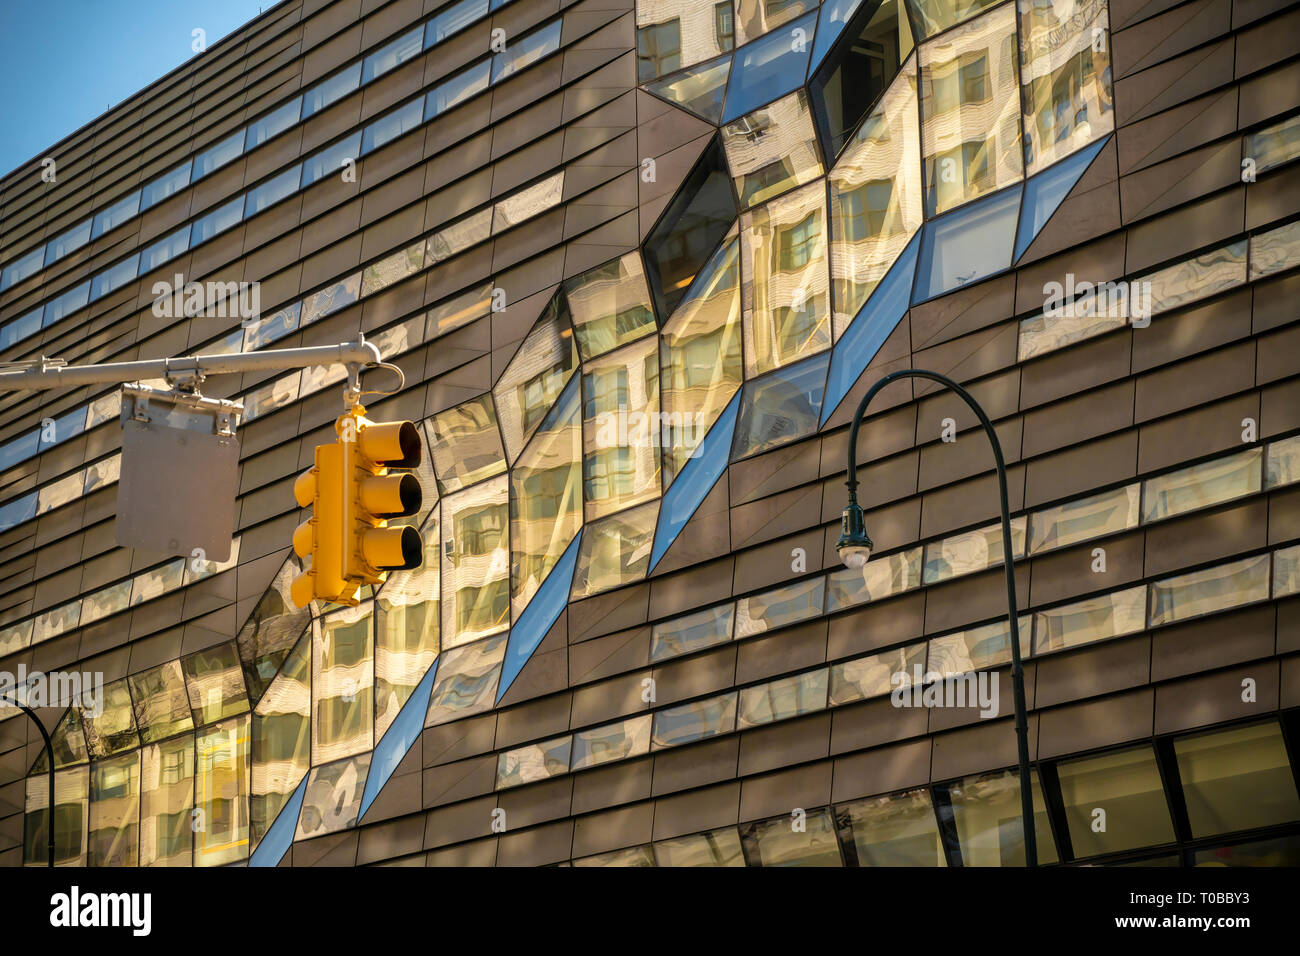 Detail der Universität Zentrum Gebäude der New School für Social Research in Greenwich Village ist am Sonntag, März 17, 2019 gesehen. Das 16-stöckige, multifunktionale Gebäude beherbergt die Klassenzimmer, ein Auditorium und einen Schlafsaal. Es wurde von Roger Duffy von Skidmore, Owings & Merrill entworfen. (© Richard B. Levine) Stockfoto